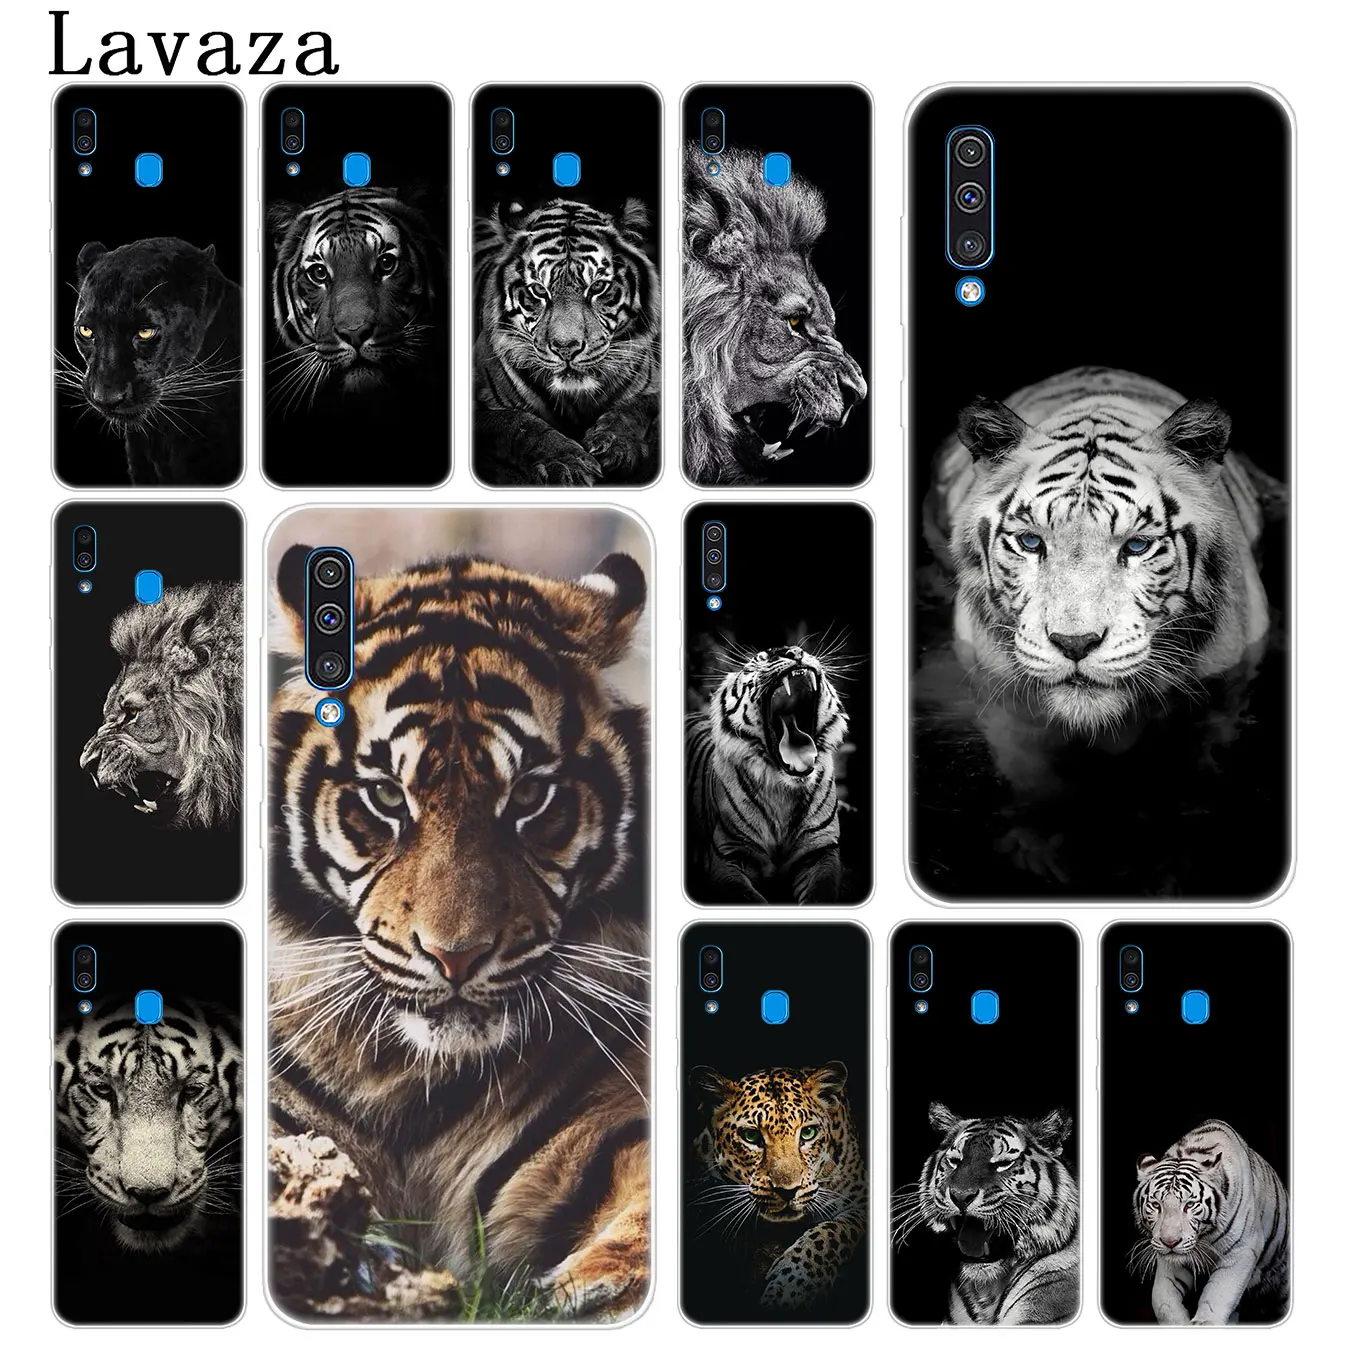 Тигром львом черного цвета с леопардовым принтом сатиновая юбка-американка пантера чехол для телефона для samsung Galaxy A70 A60 A50 A40 A30 A20 A10 M10 M20 M30 M40 A20e